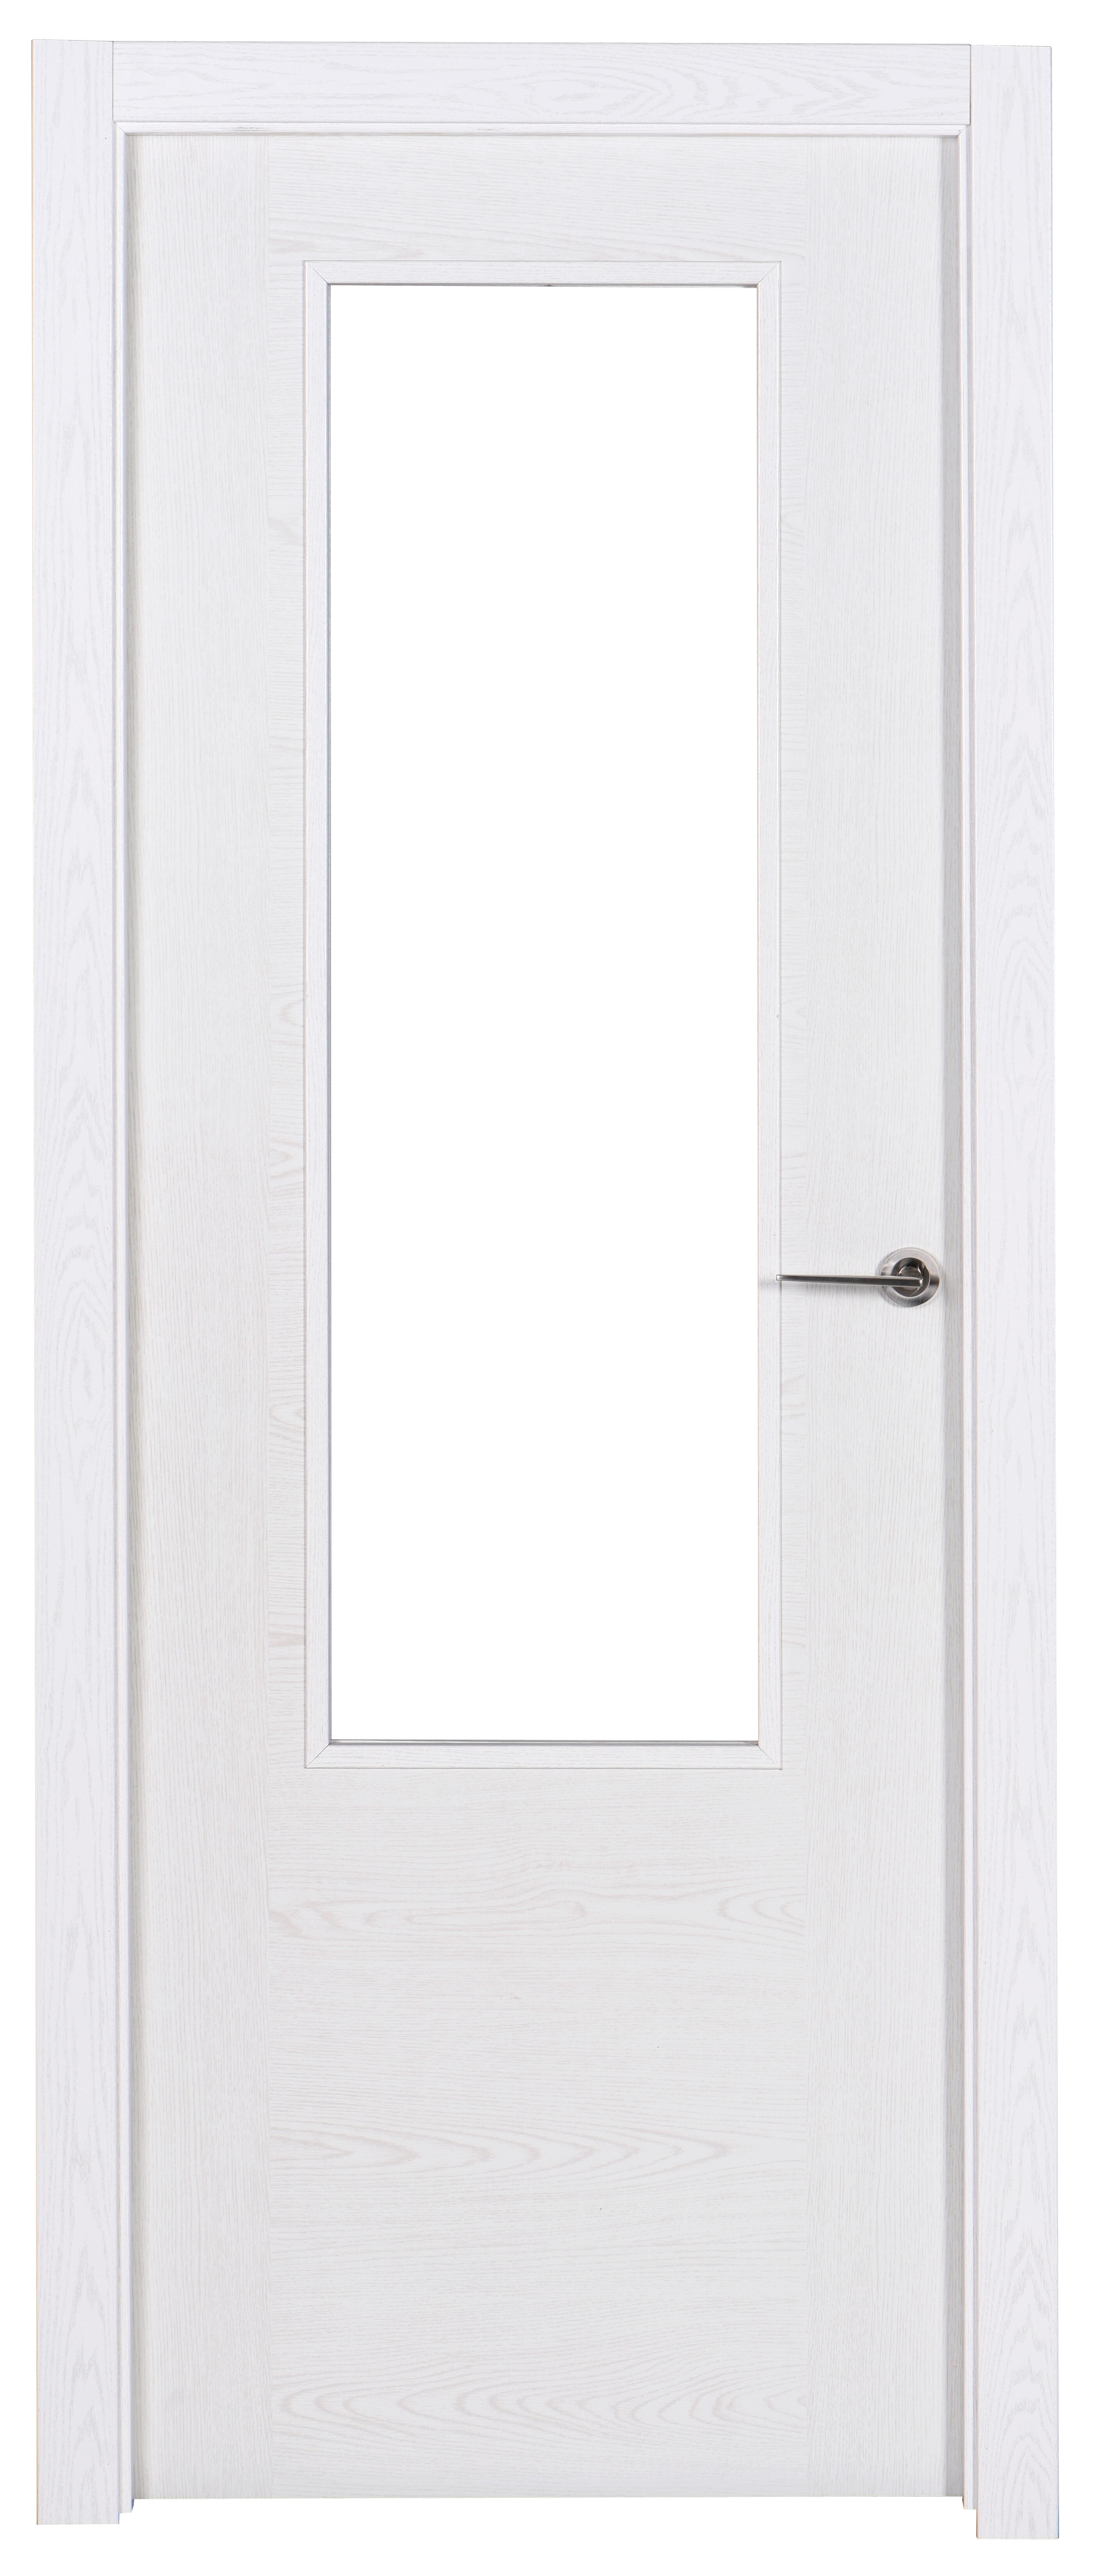 Puerta canarias blanco apertura izquierda con cristal 82.5cm